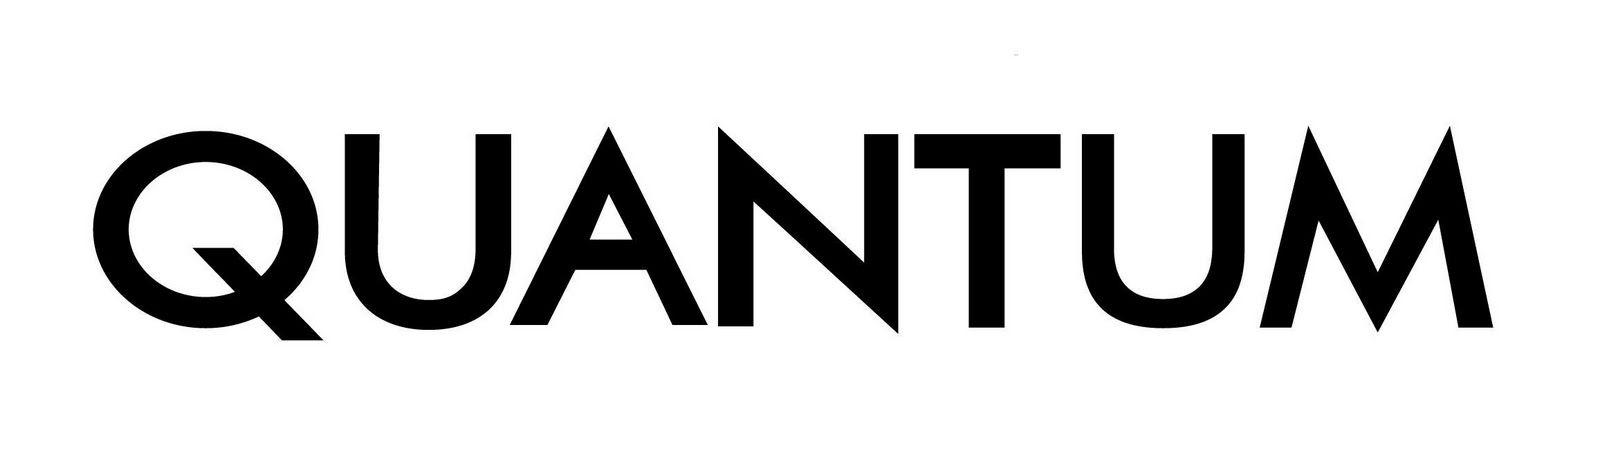 Quantum Logo - Quantum Logos